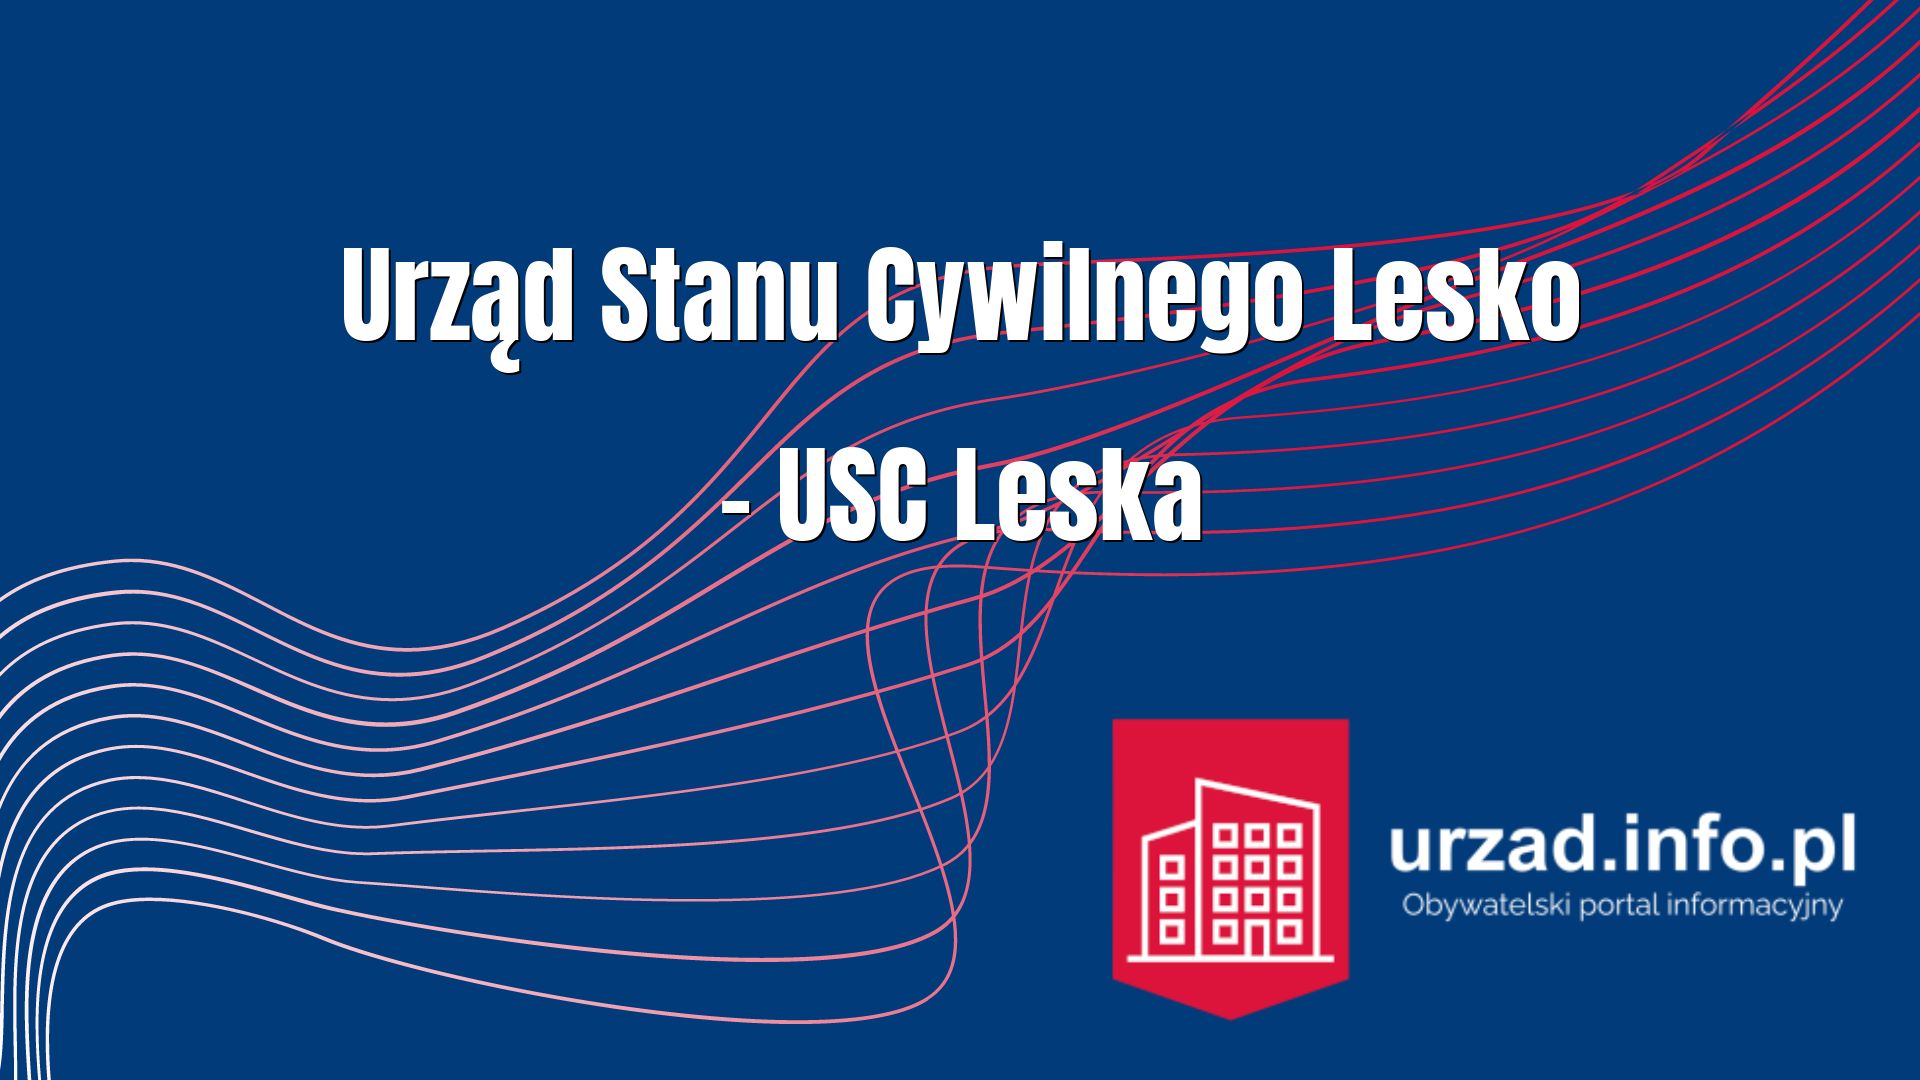 Urząd Stanu Cywilnego Lesko – USC Leska